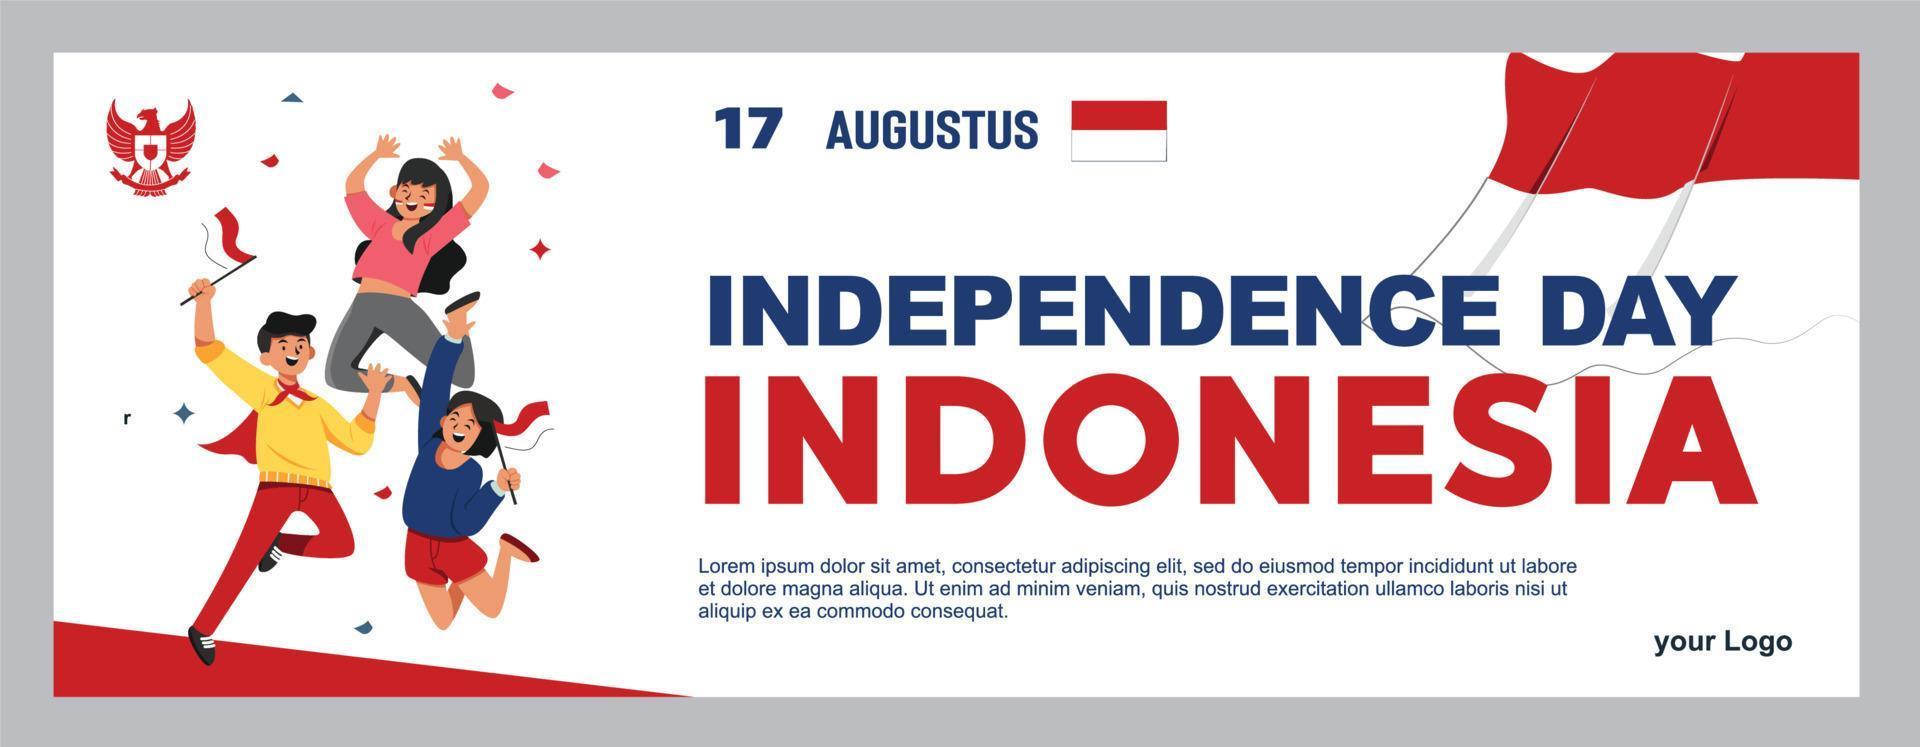 spirito del giorno dell'indipendenza indonesiana. 17 agosto 3 giovani che portano bandiere vettore